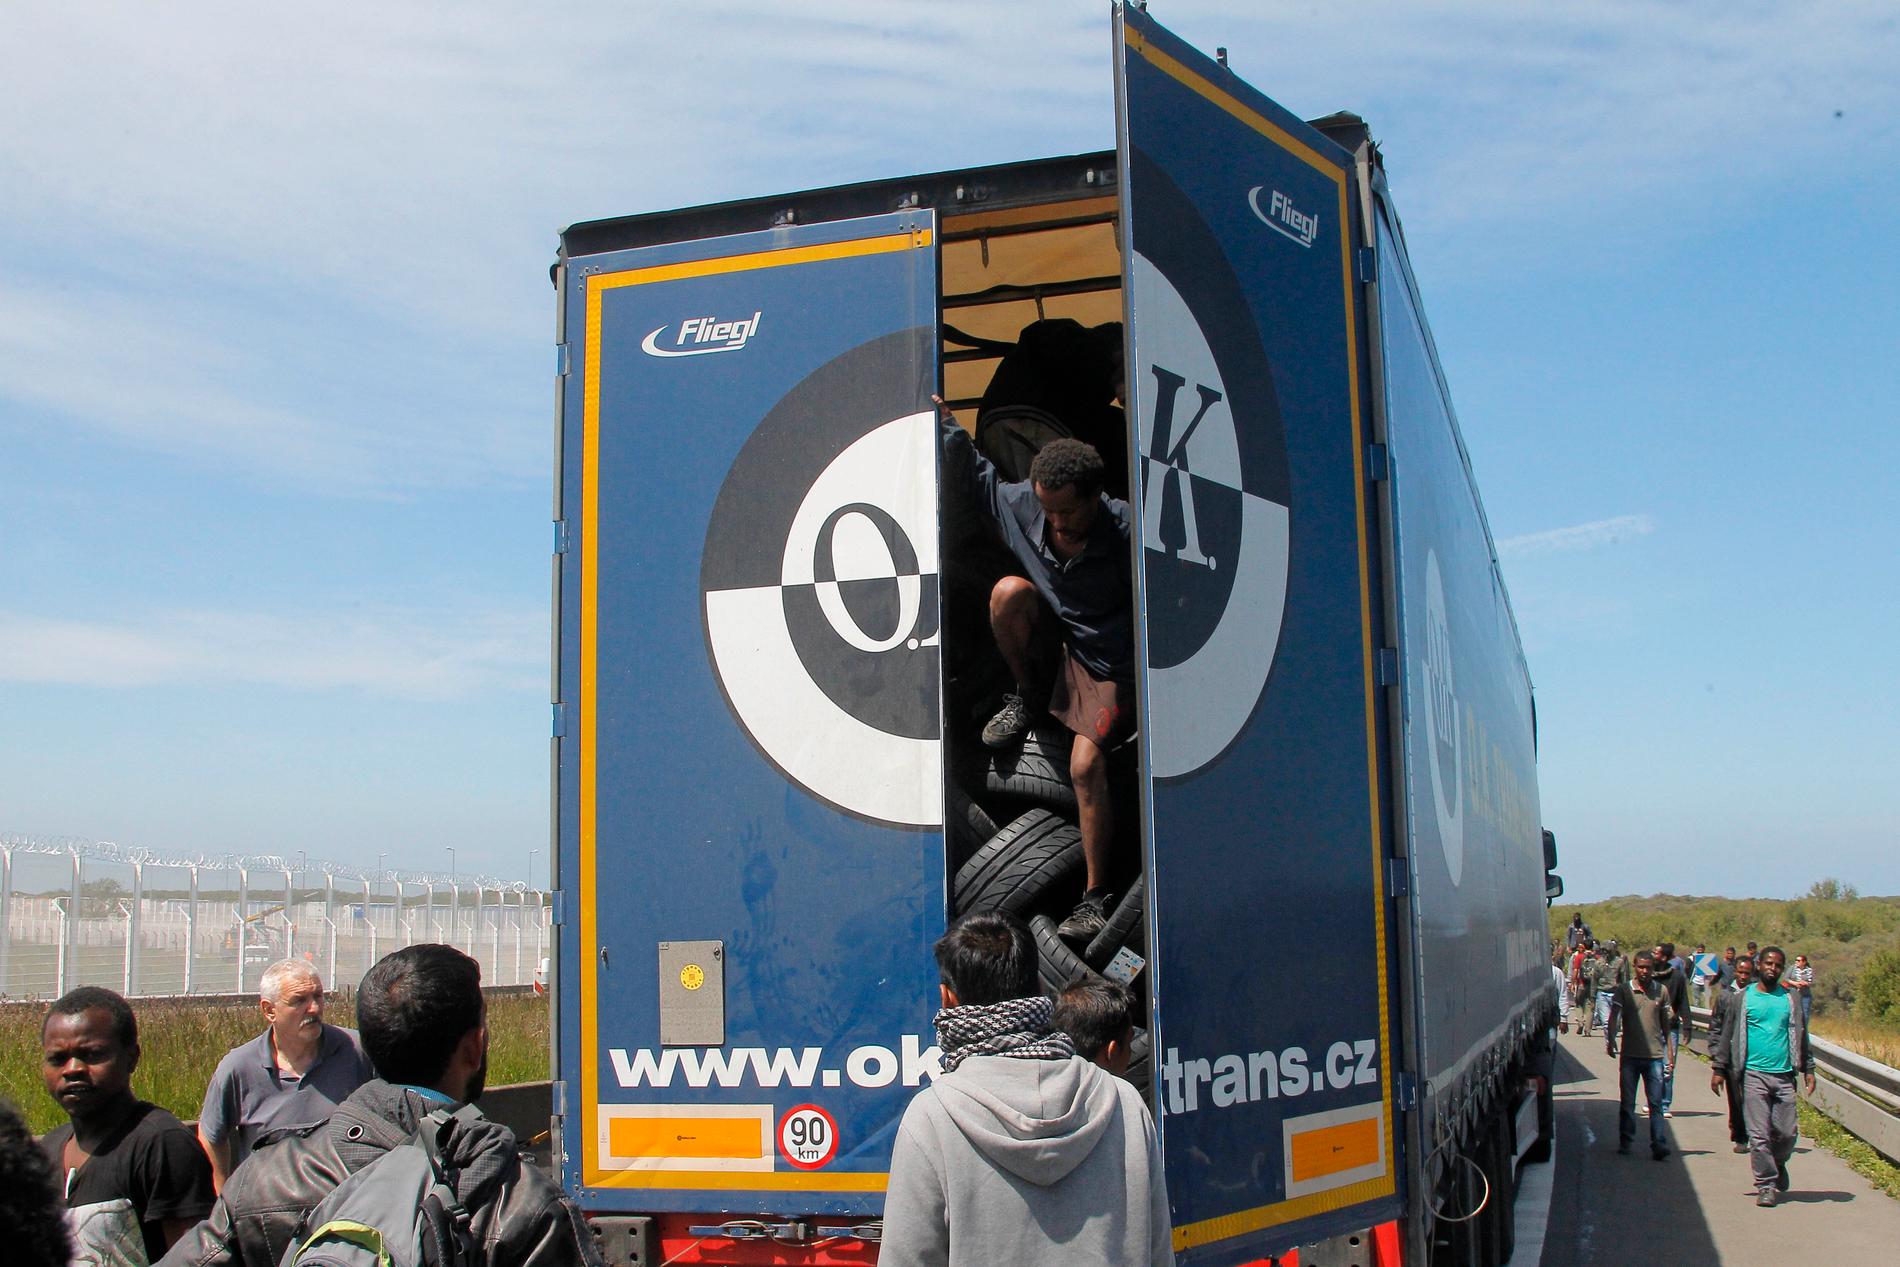 En lastbil stoppad i Calais i maj 2015 sedan migranter som försökt ta sig över till Storbritannien upptäckts.